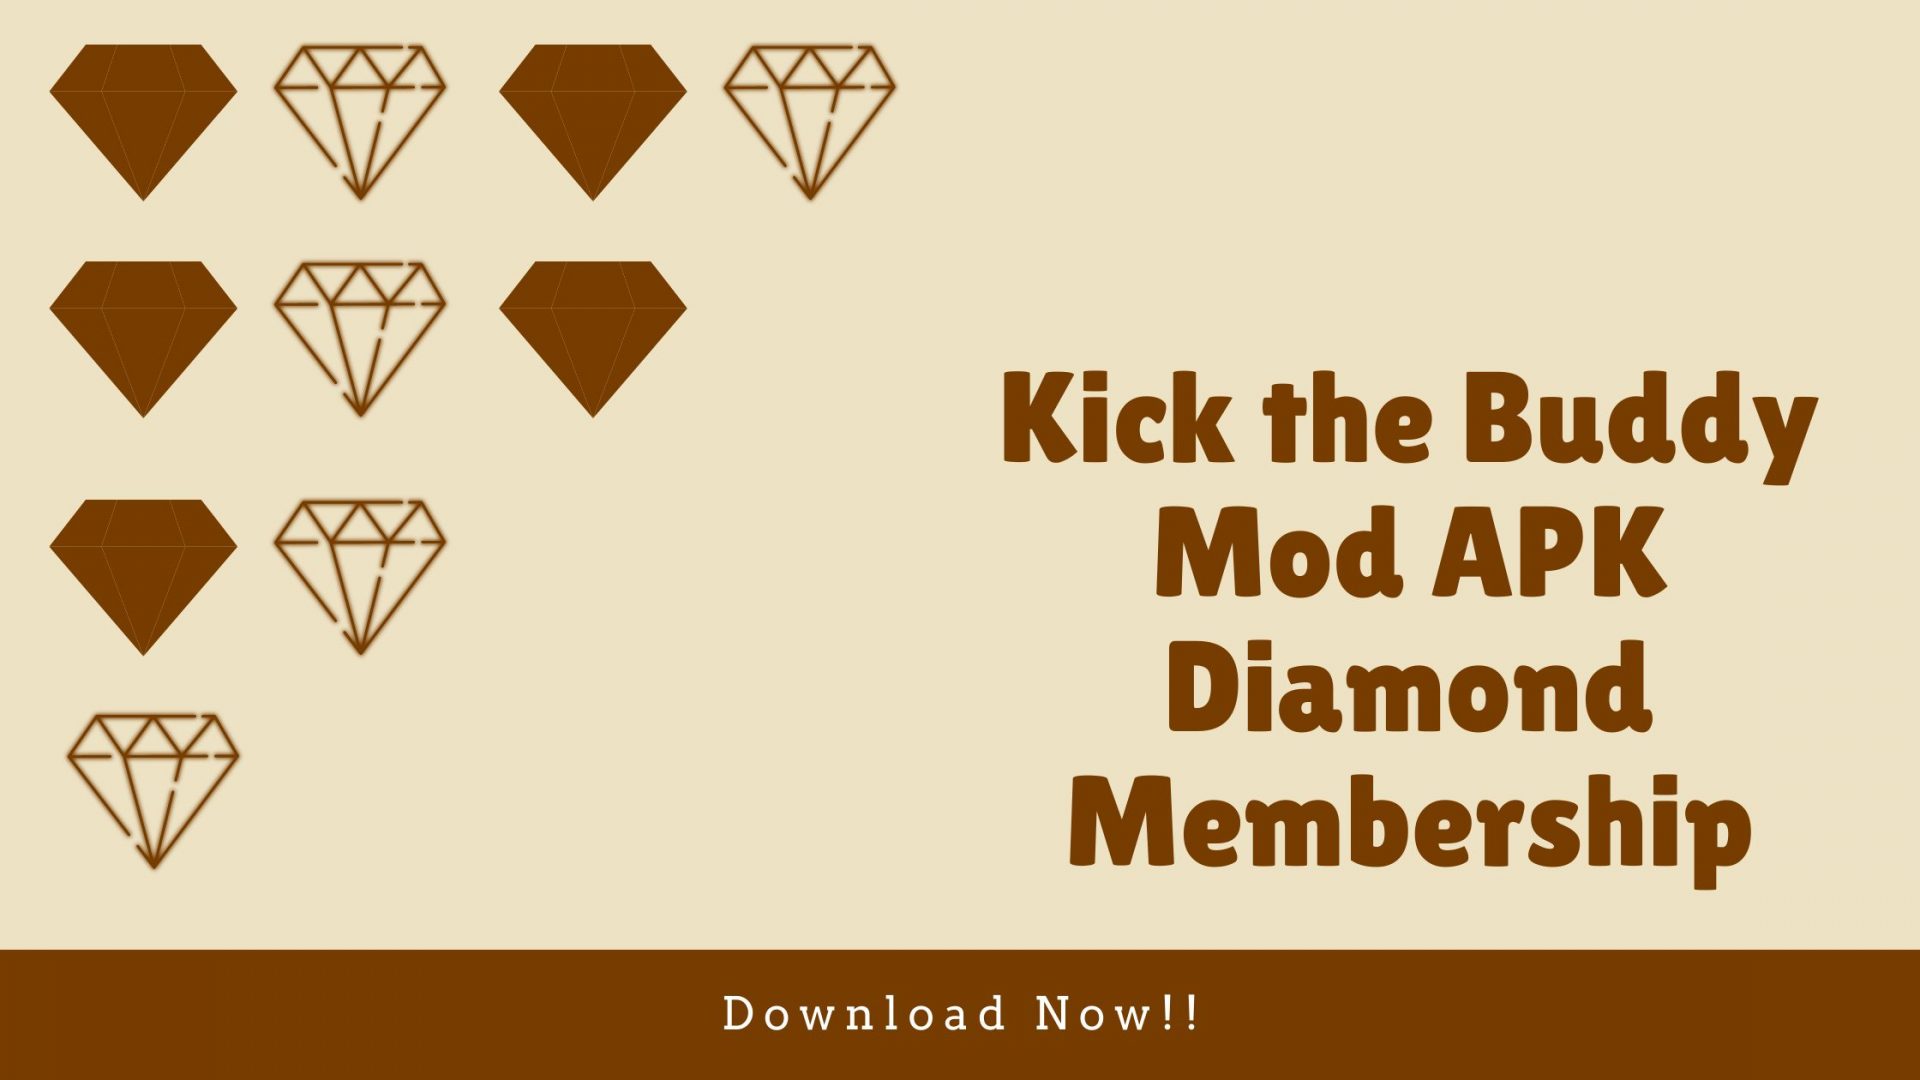 Kick The Buddy Mod Apk Diamond Membership